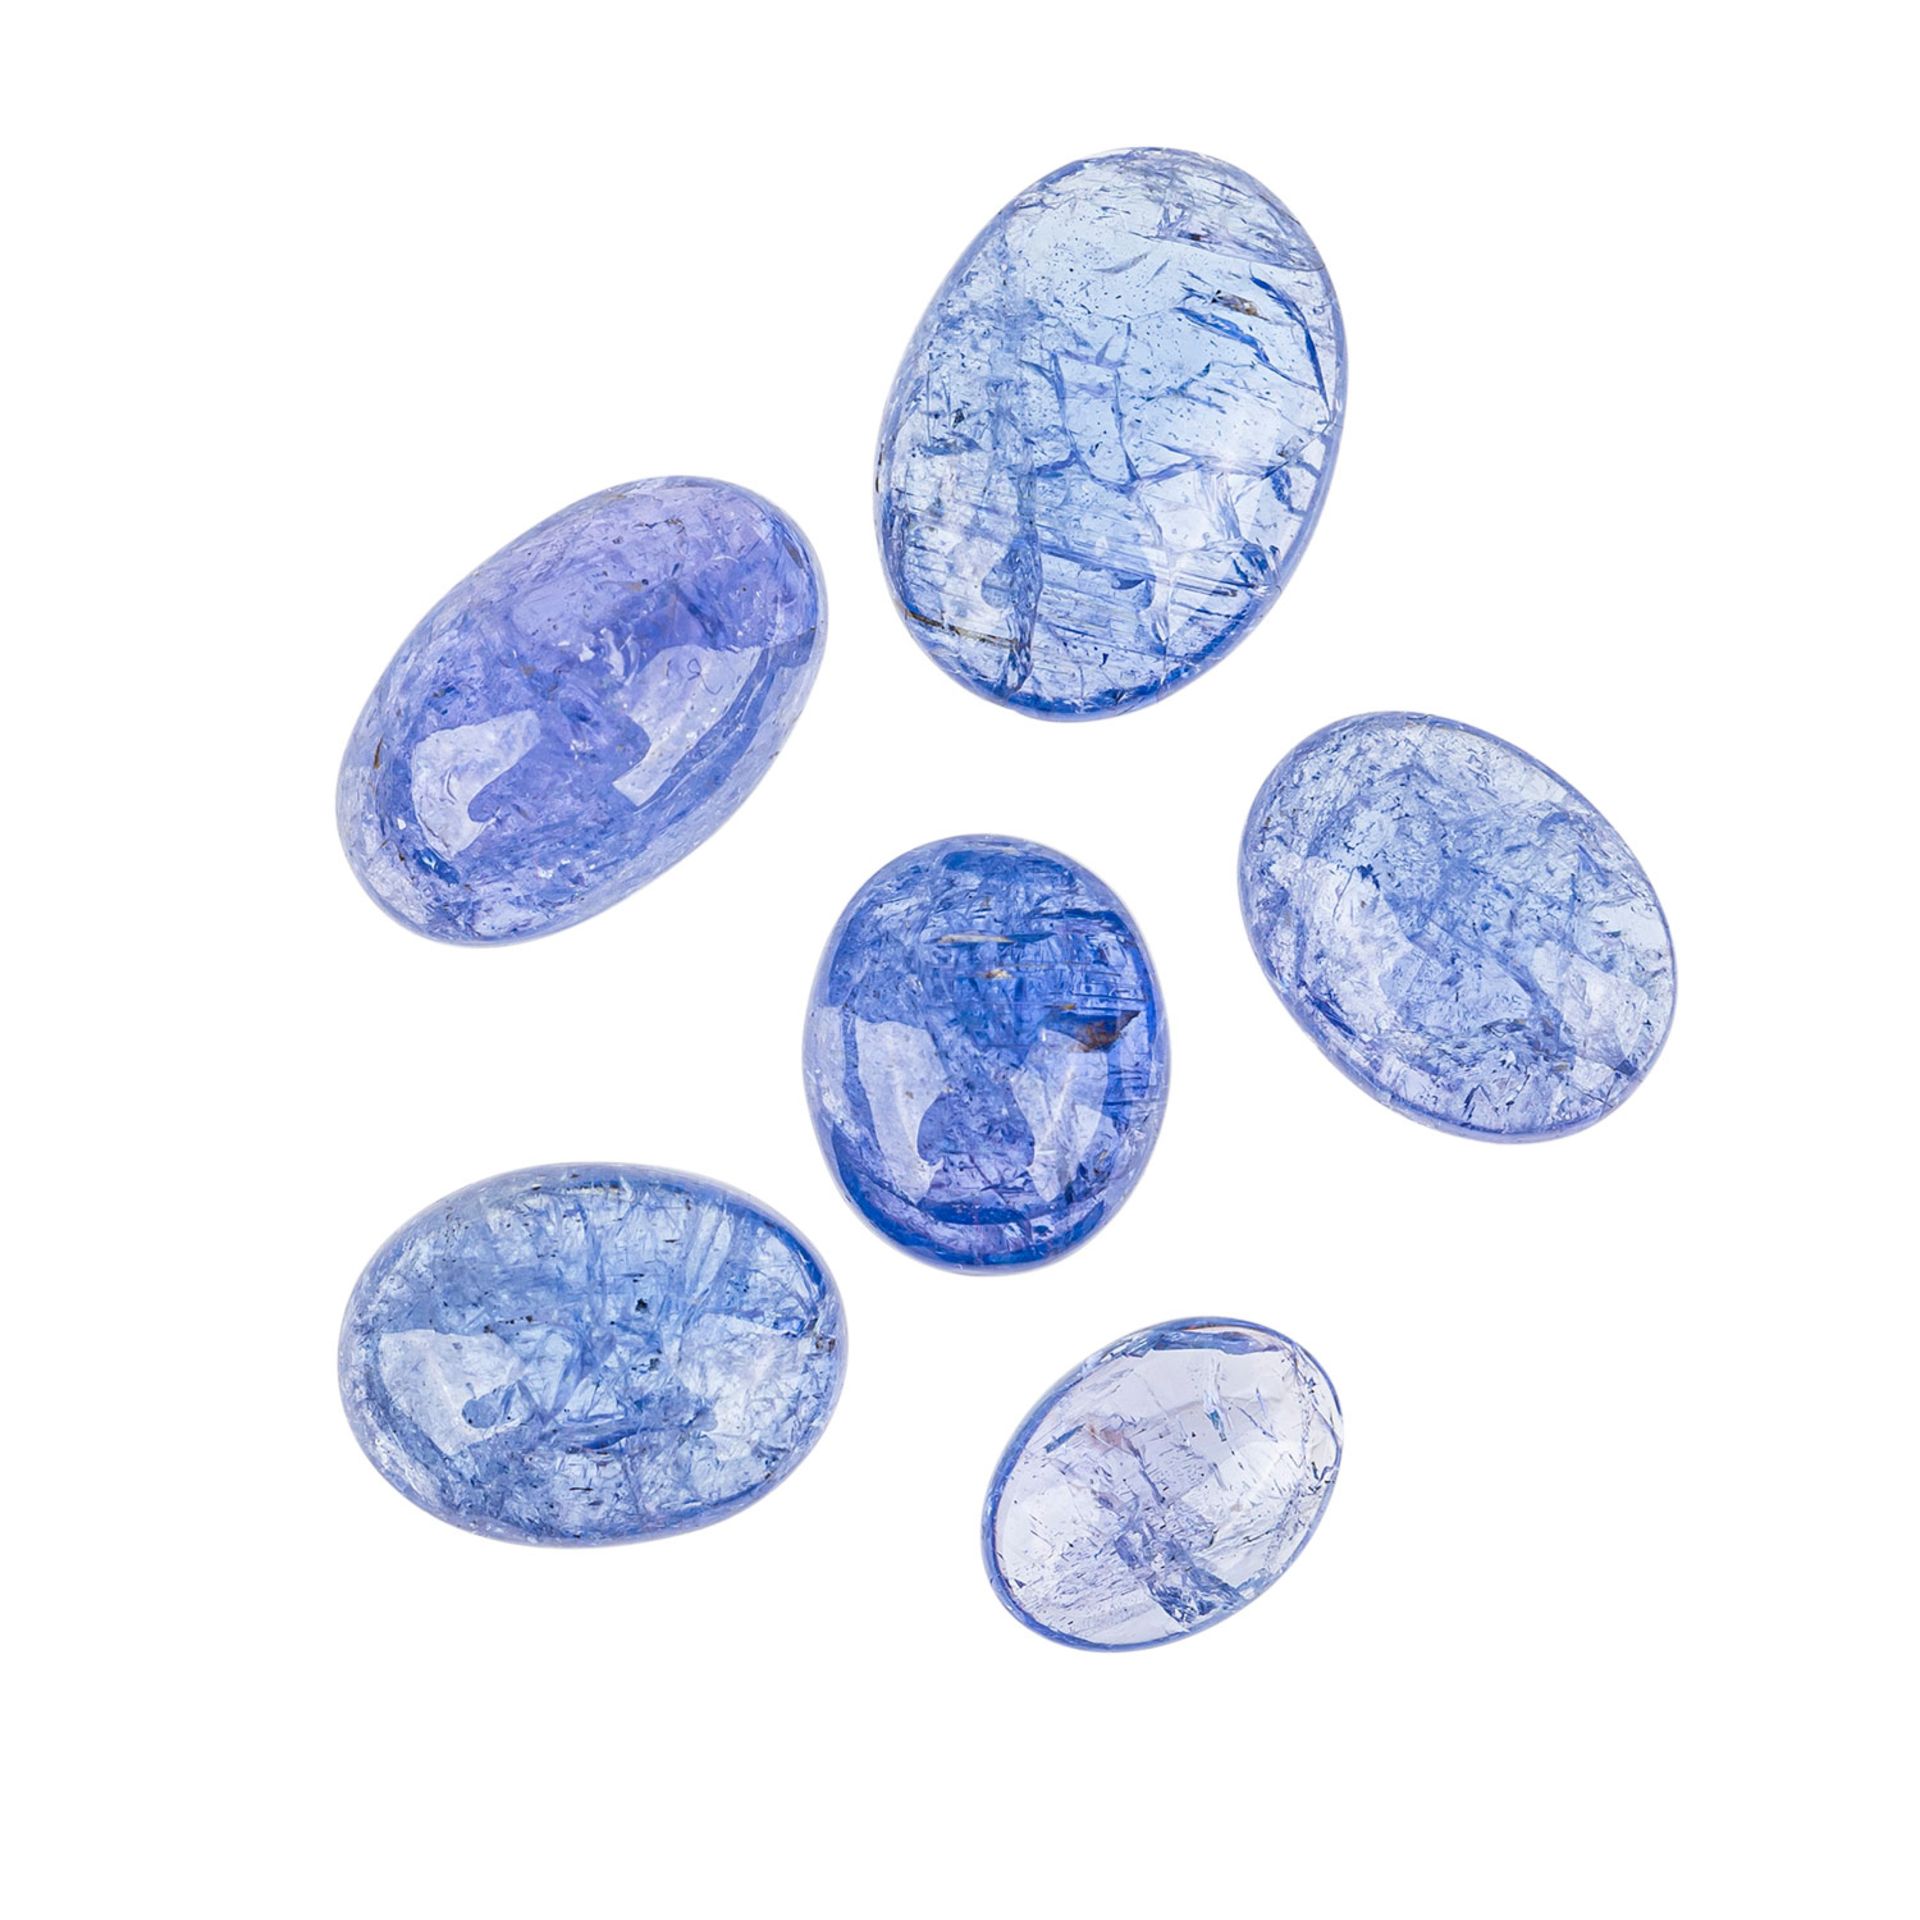 Tansanit Cabochon (6), insgesamt 32,38 ct.,in blau und blau violetten Tönen in unterschiedlichen